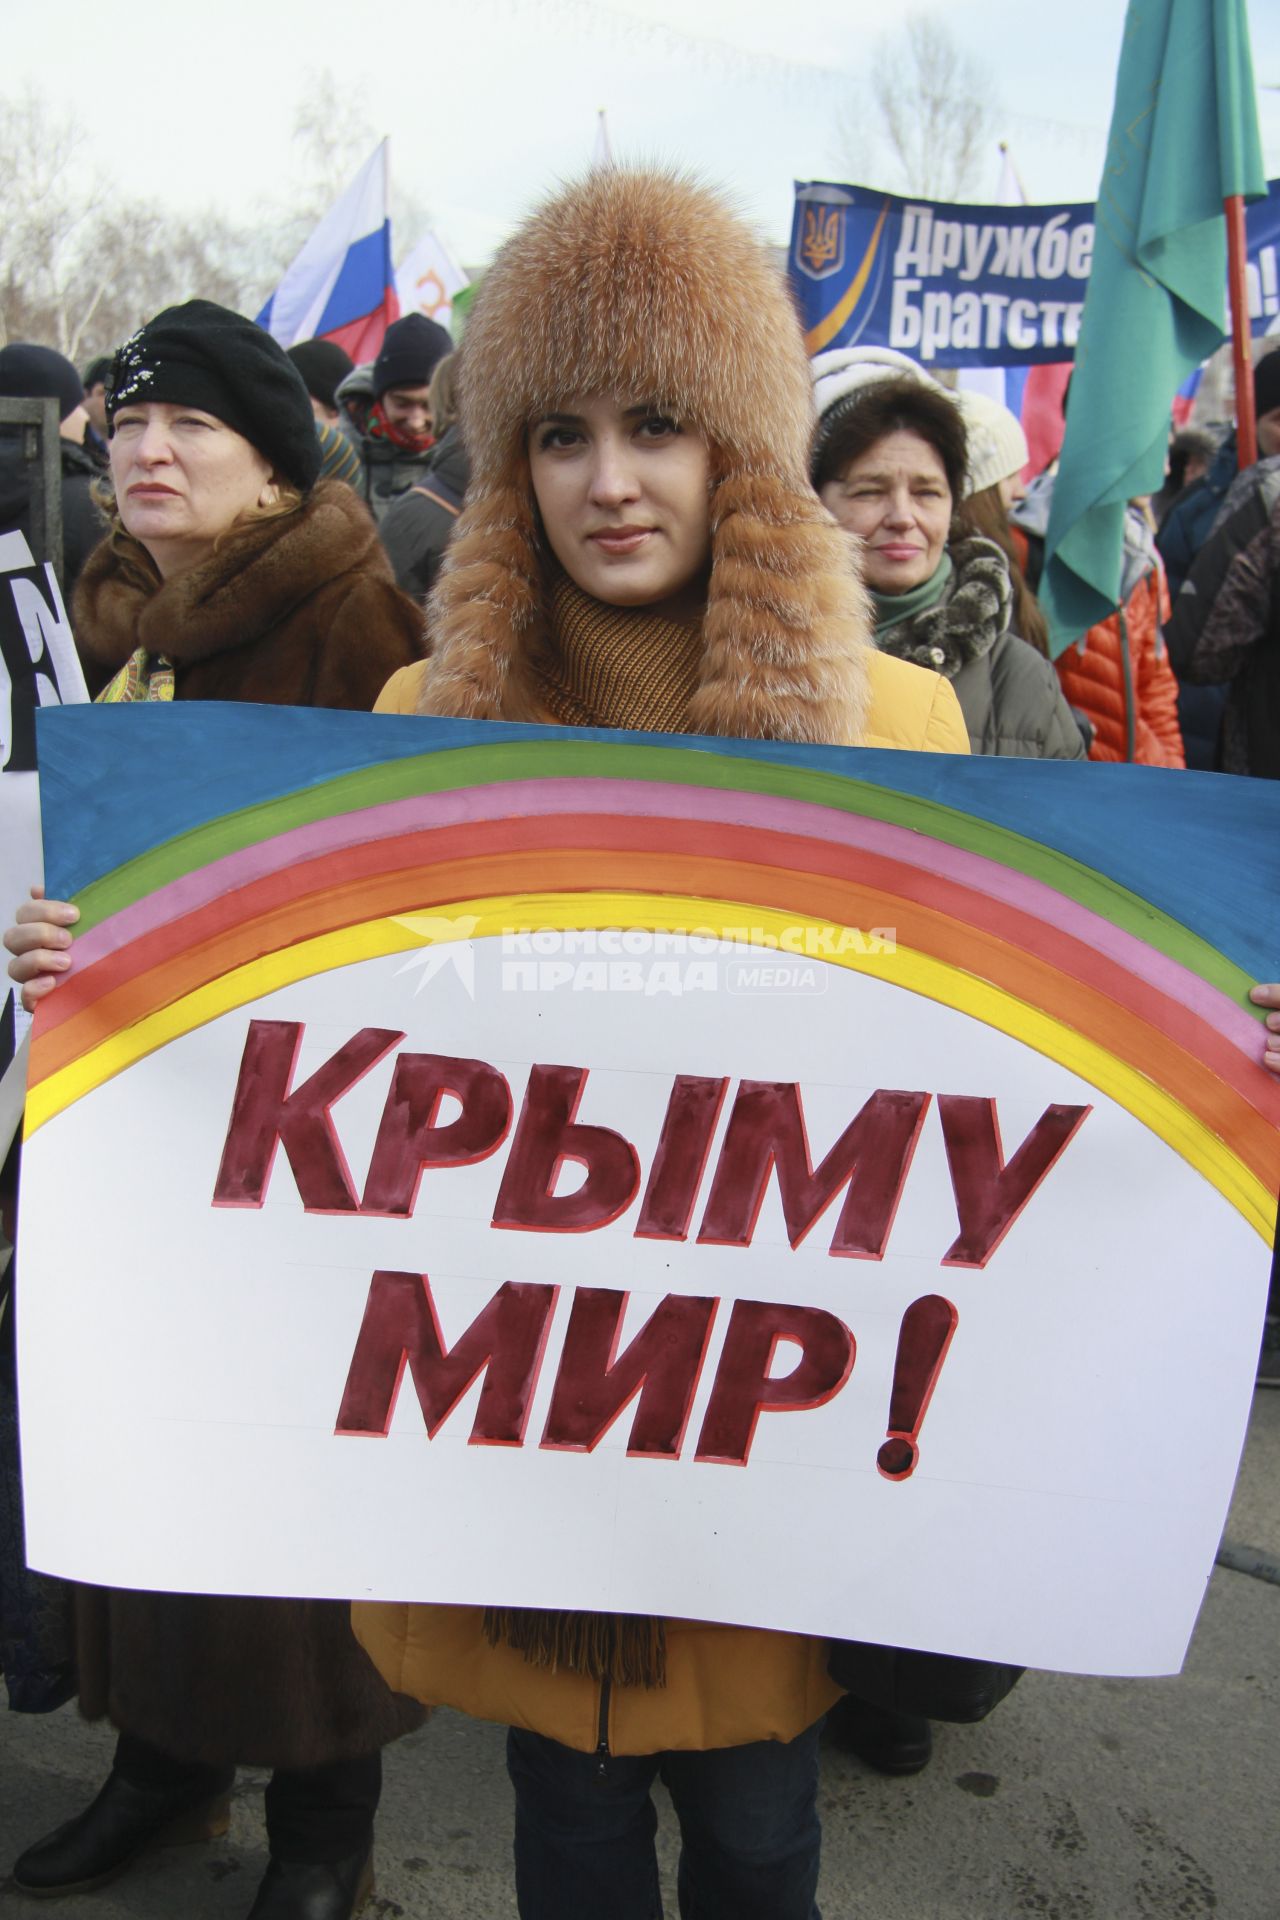 Митинг в поддержку поддержка Крыма в Барнауле. На снимке: митингующий с плакатом: `Крыму мир!`.